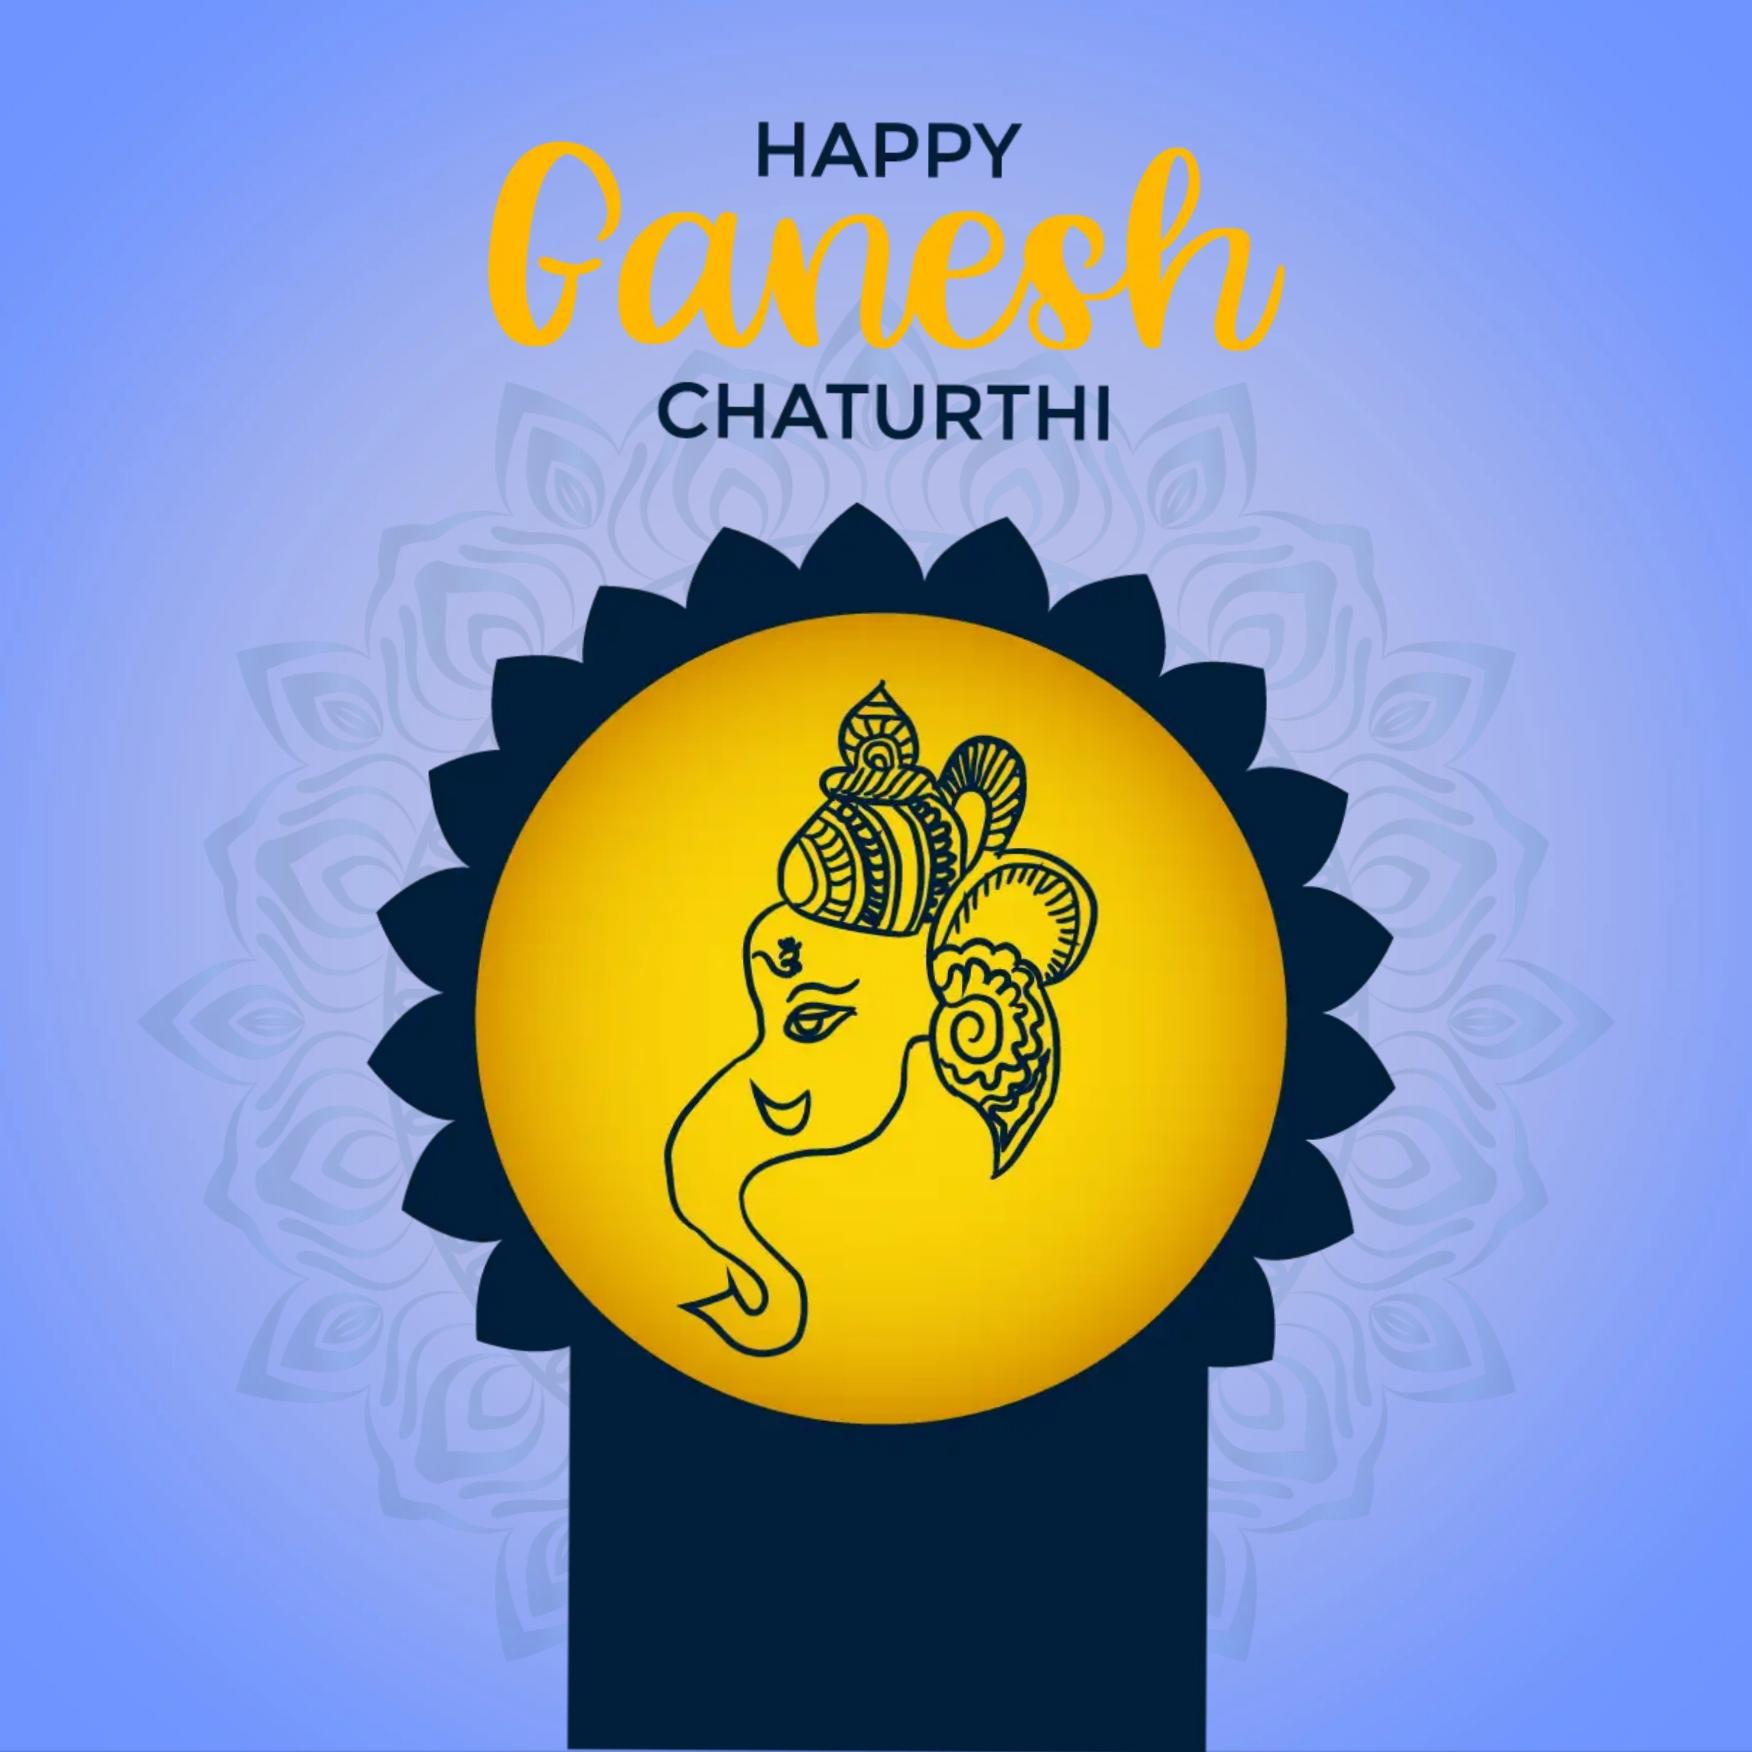 Whatsapp Happy Ganesh Chaturthi Images